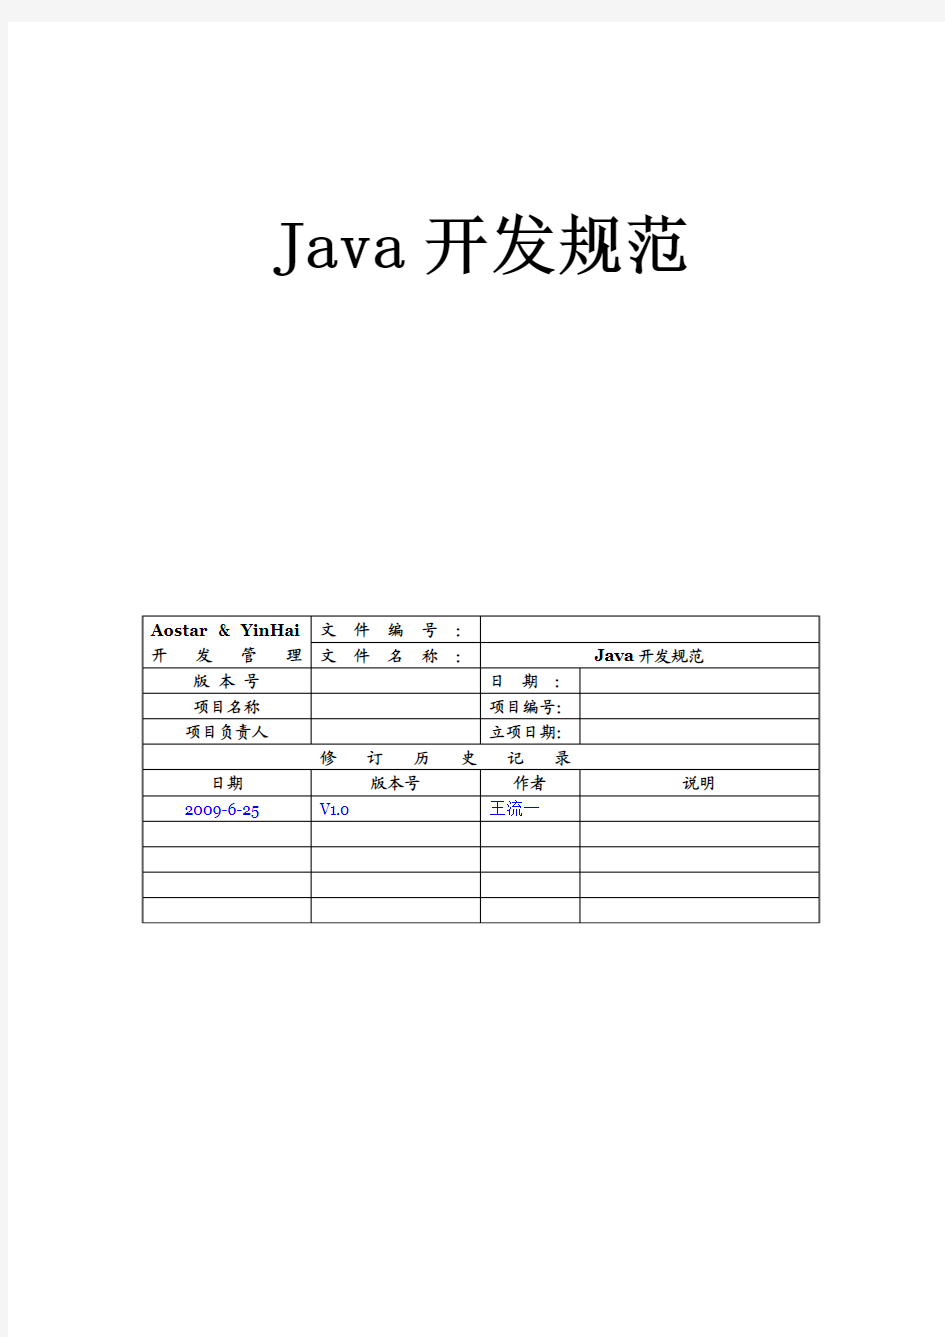 Java开发规范